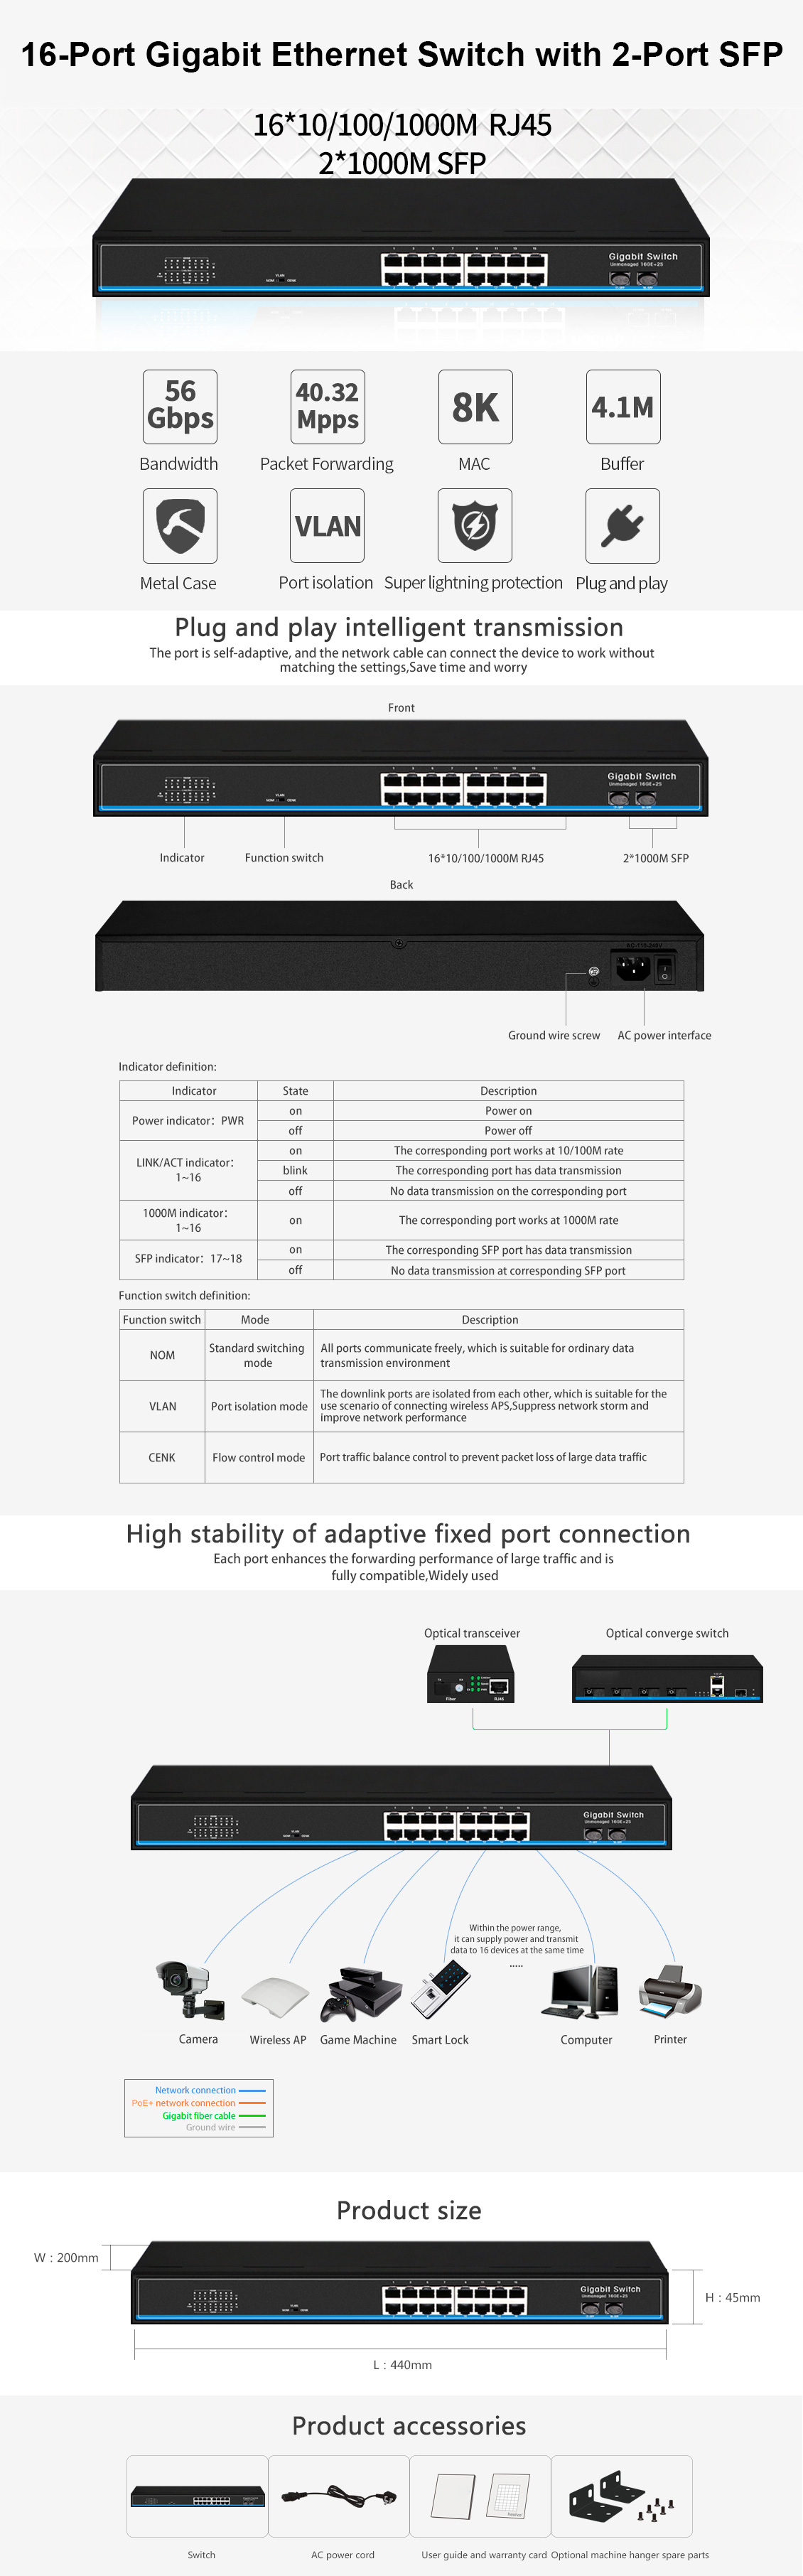 MokerLink Store - MokerLink 16-Port Gigabit Ethernet Switch with 2-Port SFP  Uplink